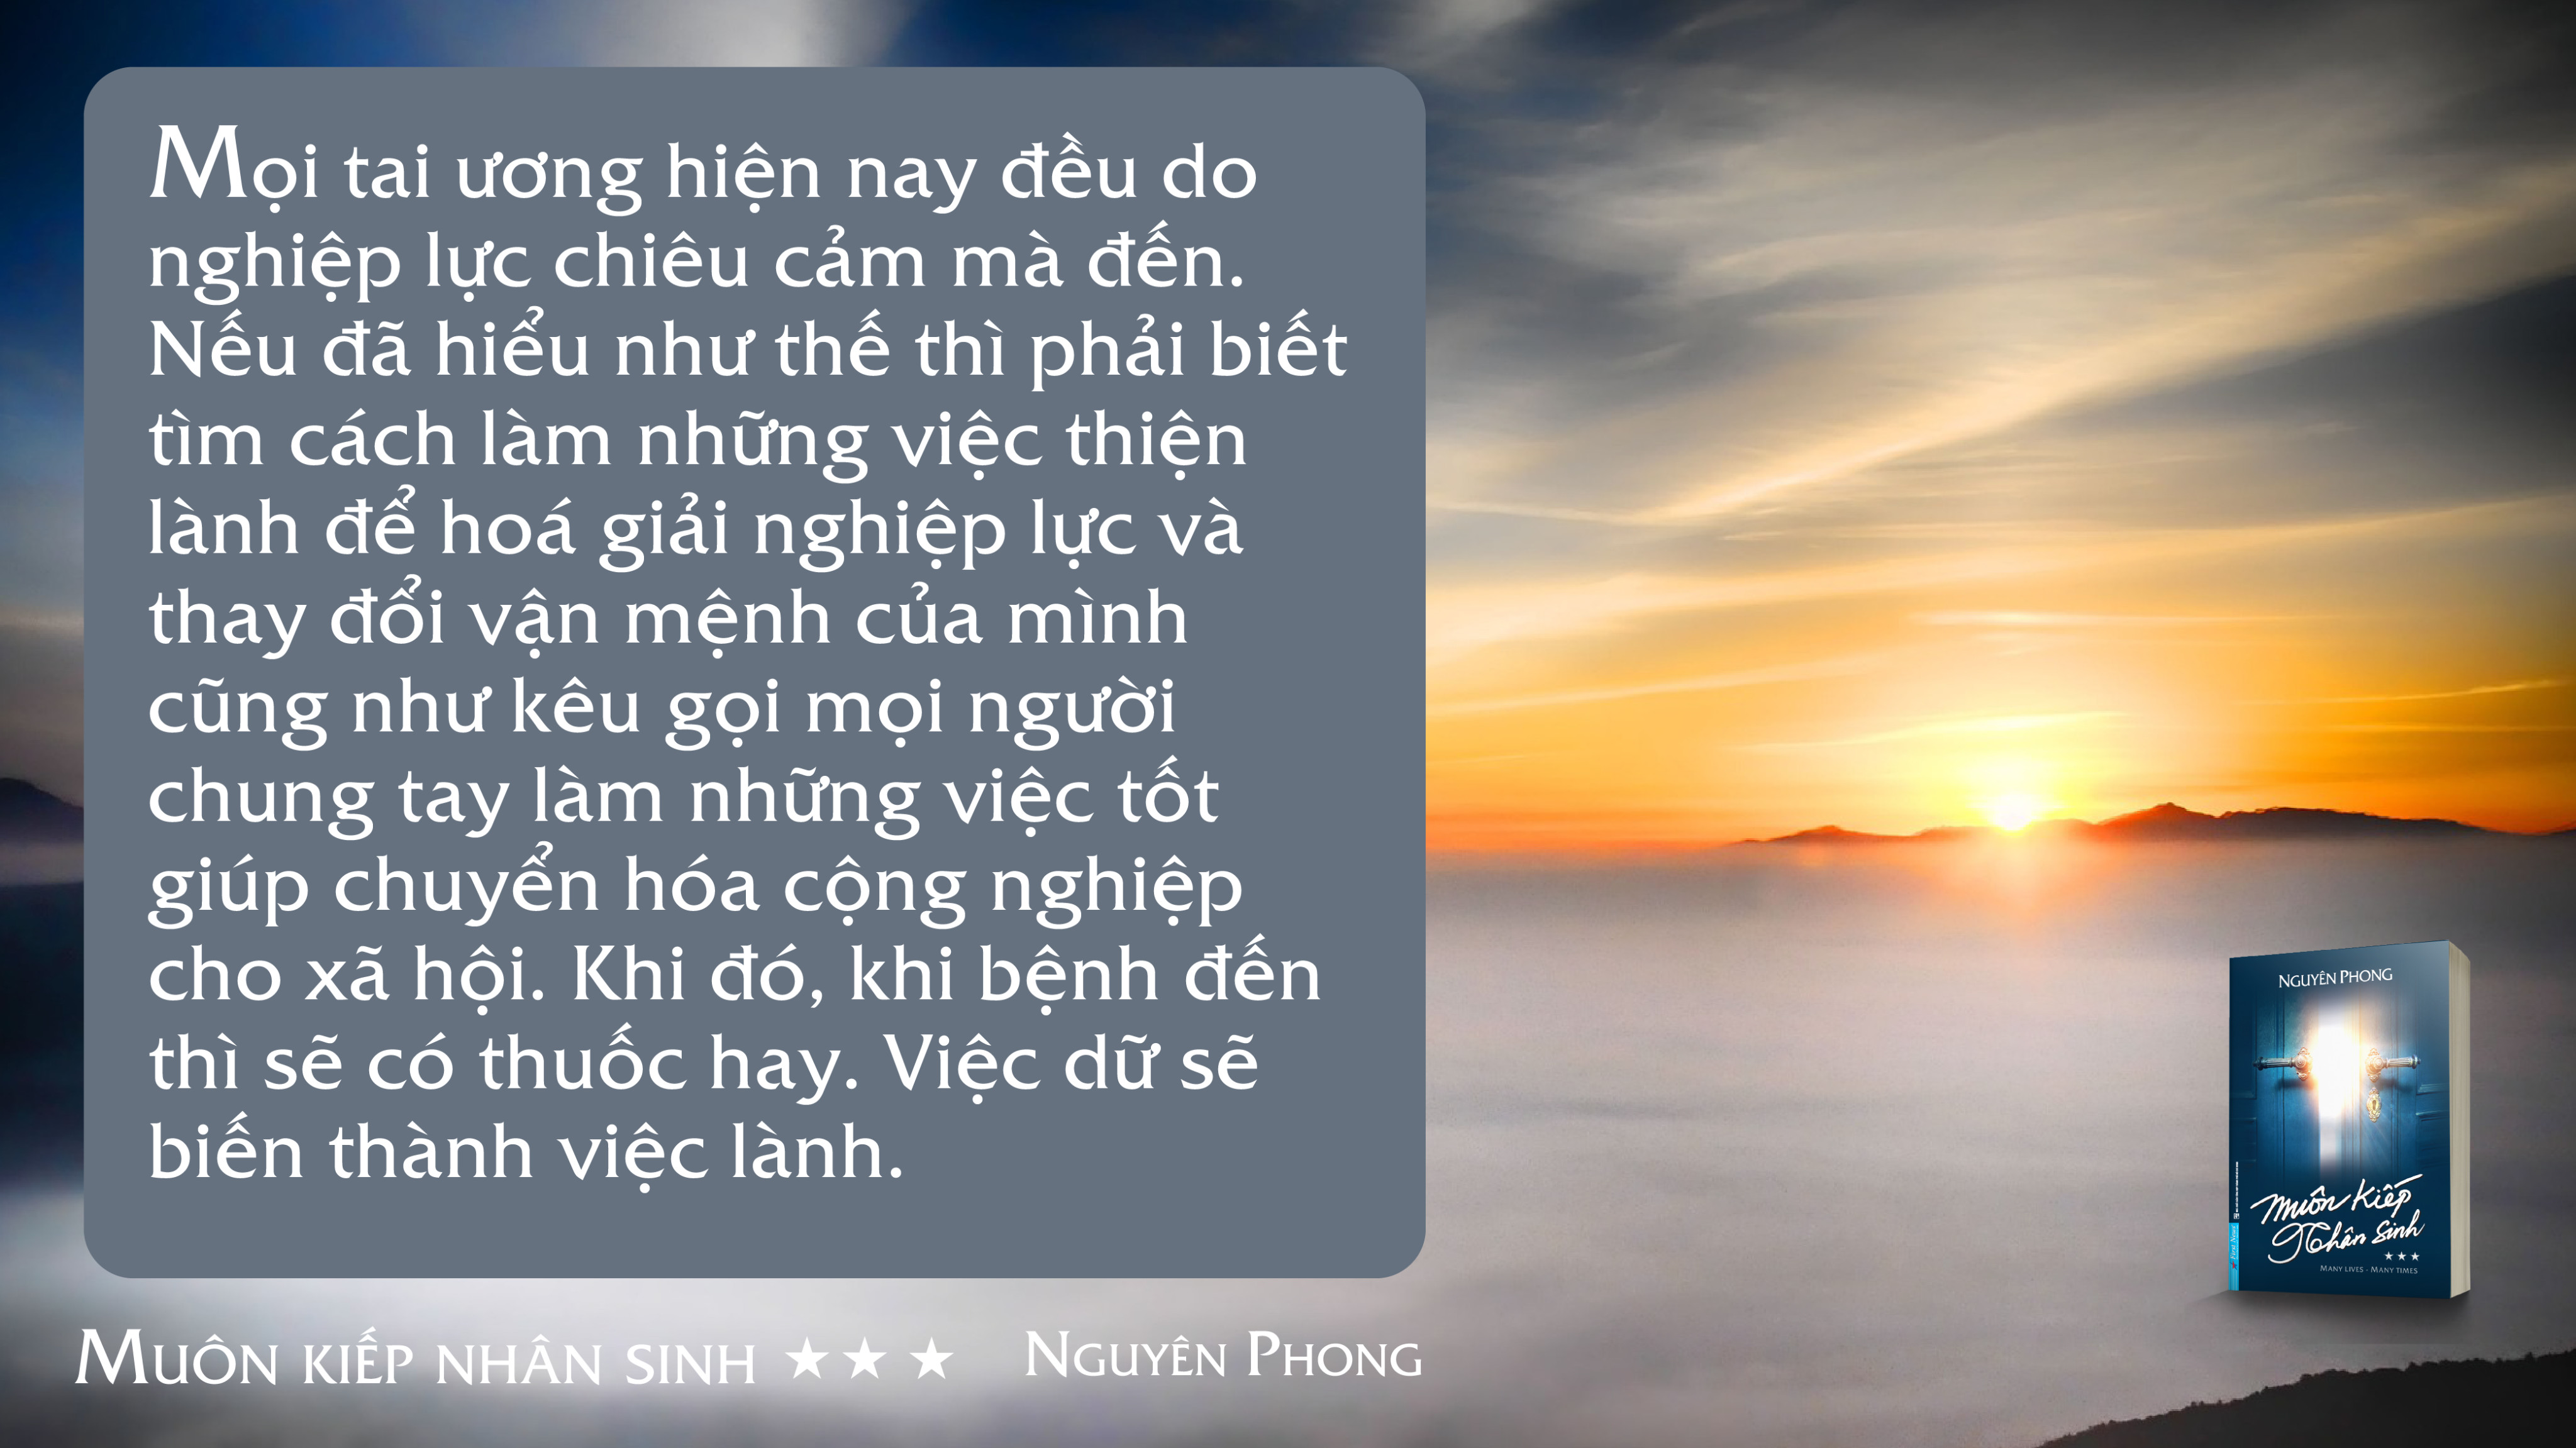 (Combo 3 quyển) MUÔN KIẾP NHÂN SINH – TẬP 1,2,3- Nguyên Phong - First News – bìa mềm